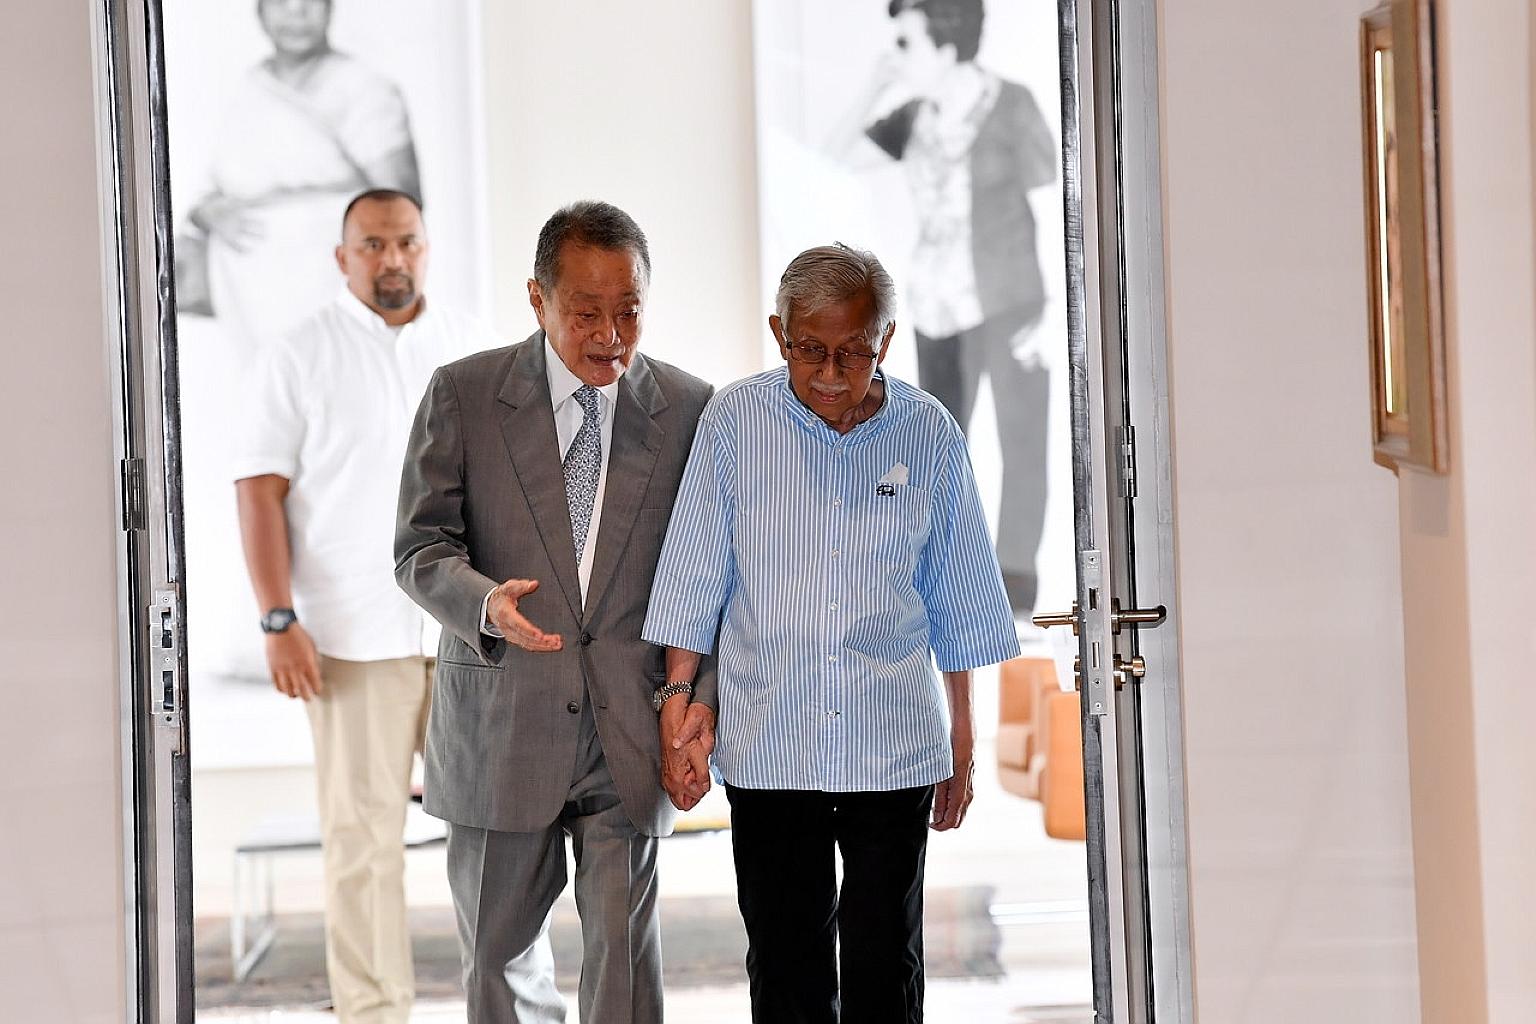 Robert Kuok Salutes PM Mahathir, Says "You Saved Malaysia" - WORLD OF BUZZ 1